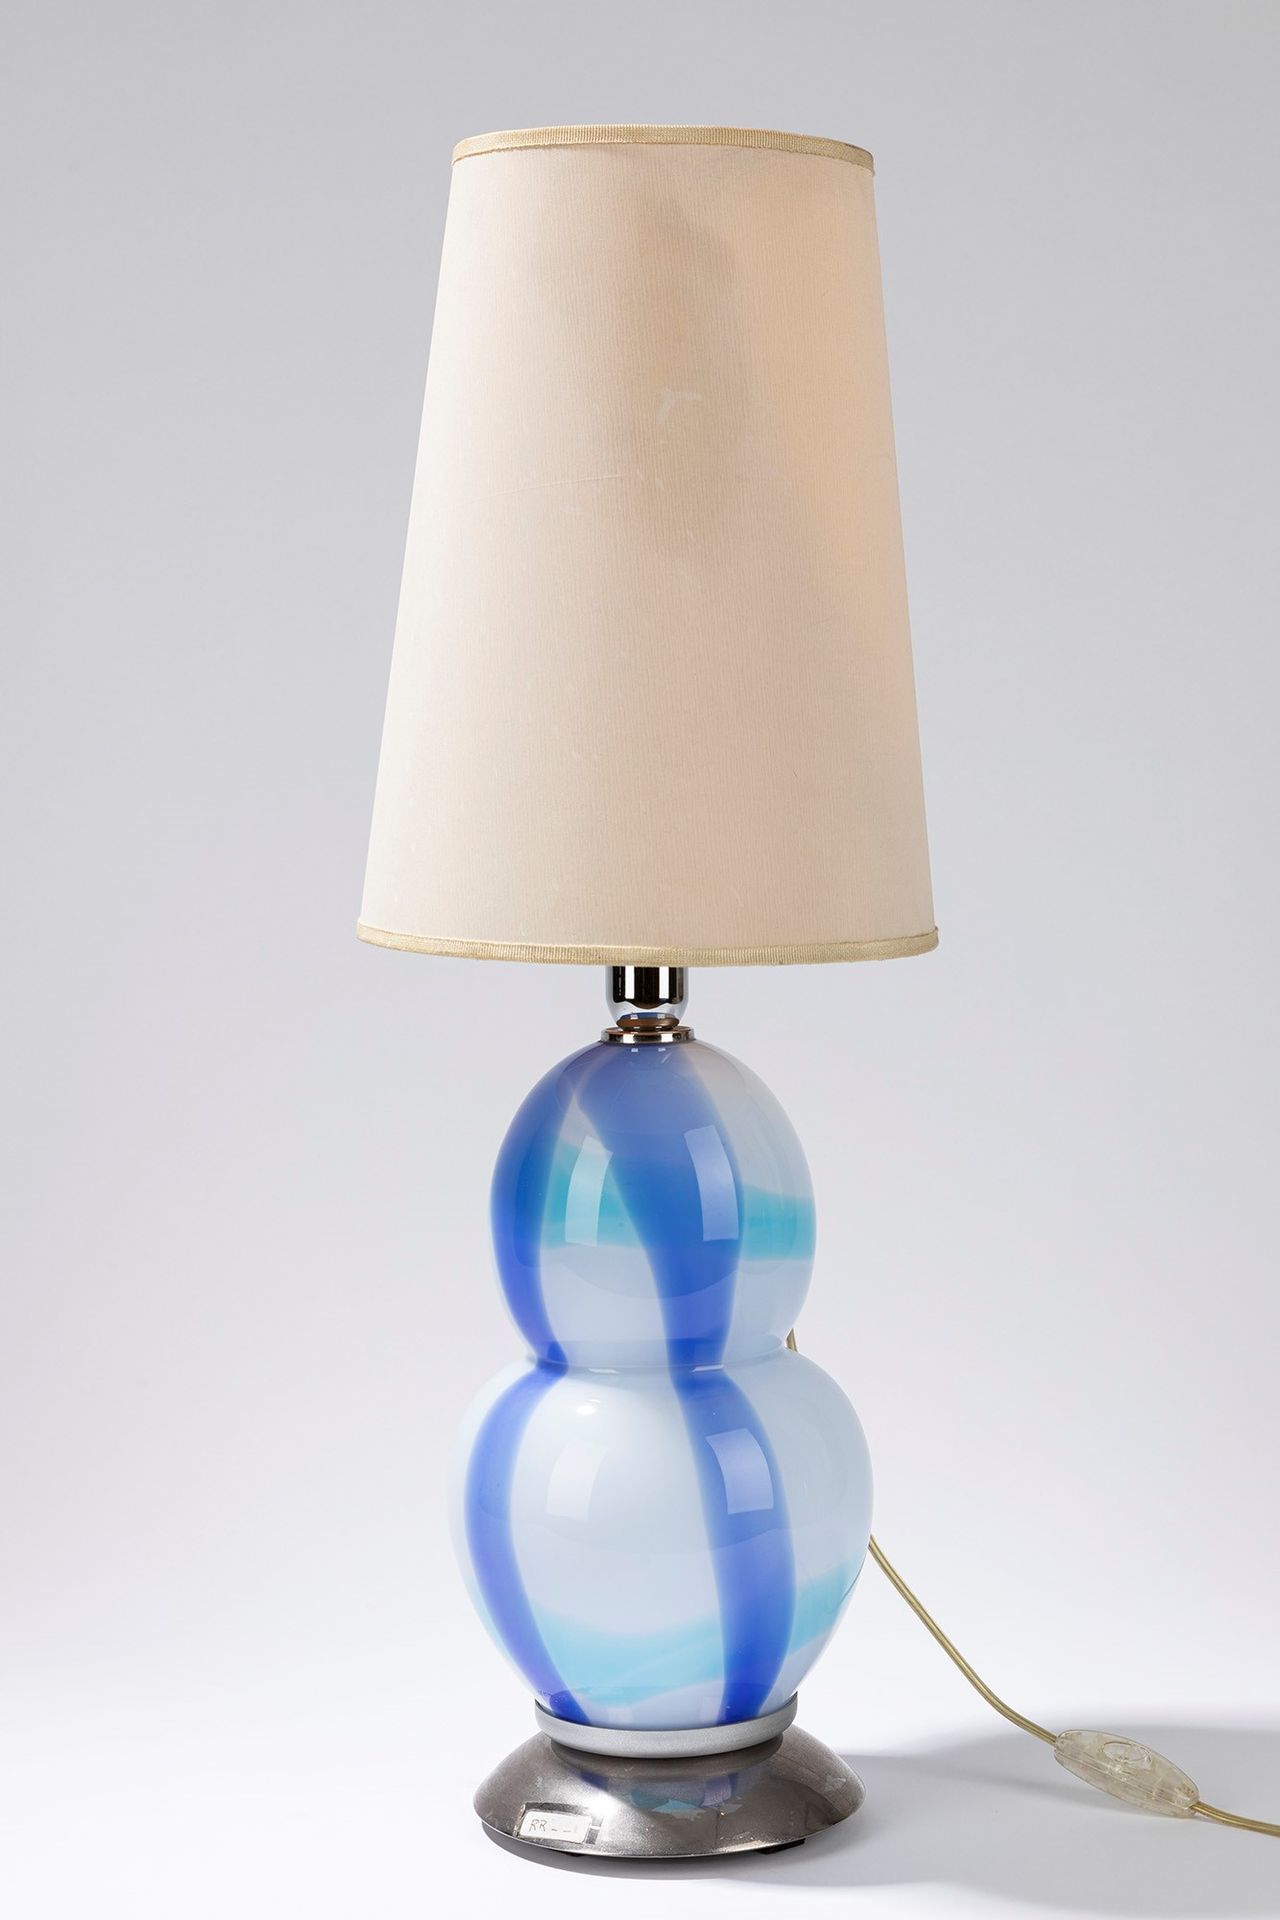 Ettore Sottsass Tischlampe, 70er Jahre

cm h 64,5 x 20
polychromes Glas.